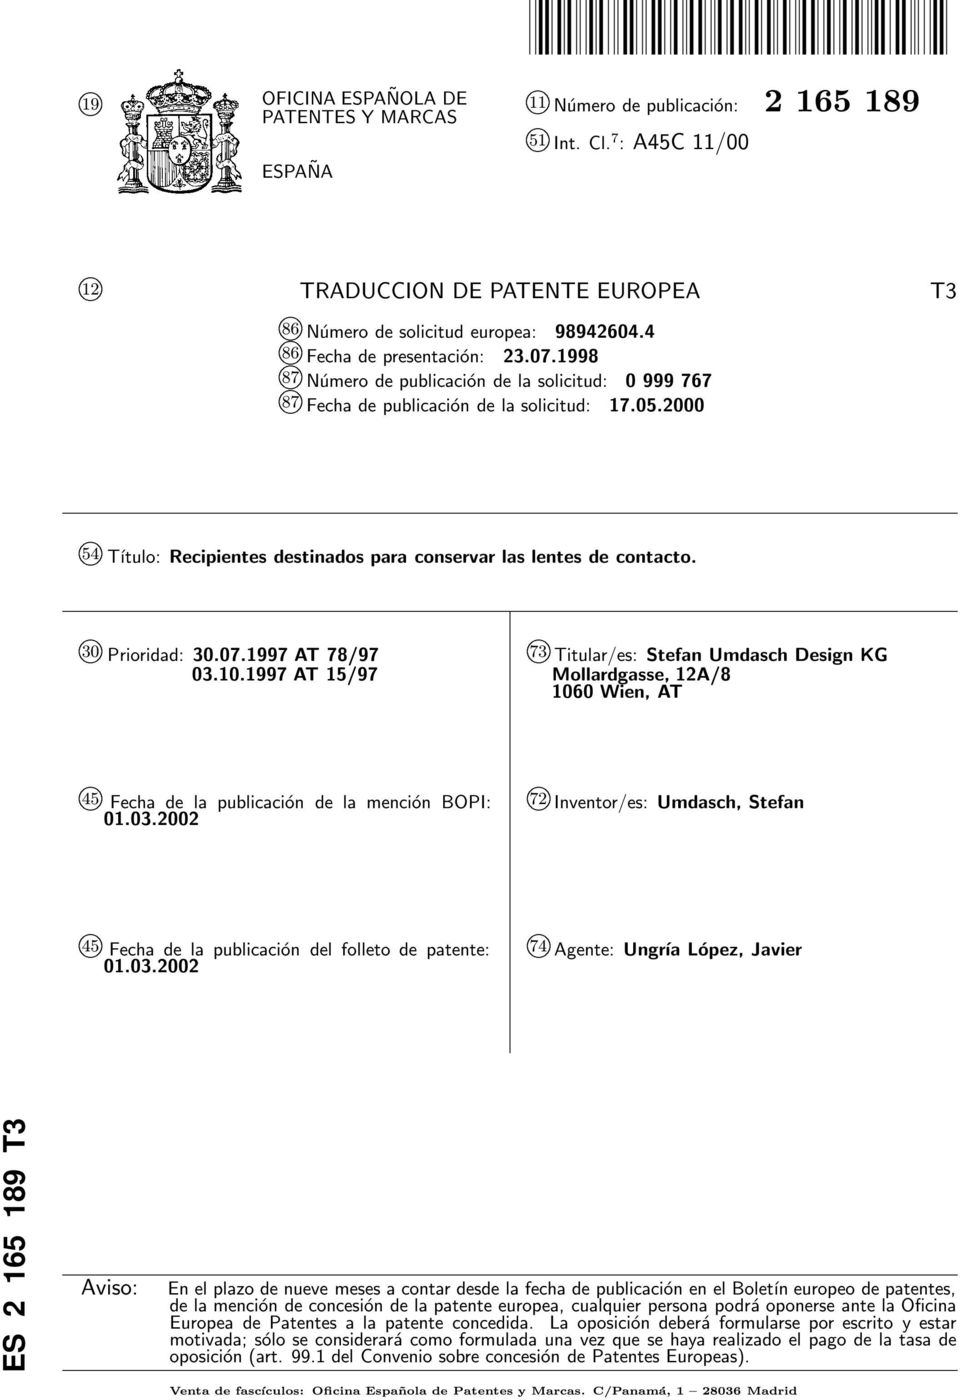 k Prioridad:.07.1997 AT 78/97 03..1997 AT 1/97 k 73 Titular/es: Stefan Umdasch Design KG Mollardgasse, 12A/8 Wien, AT k 4 Fecha de la publicación de la mención BOPI: 01.03.02 k 72 Inventor/es: Umdasch, Stefan k 4 Fecha de la publicación del folleto de patente: 01.